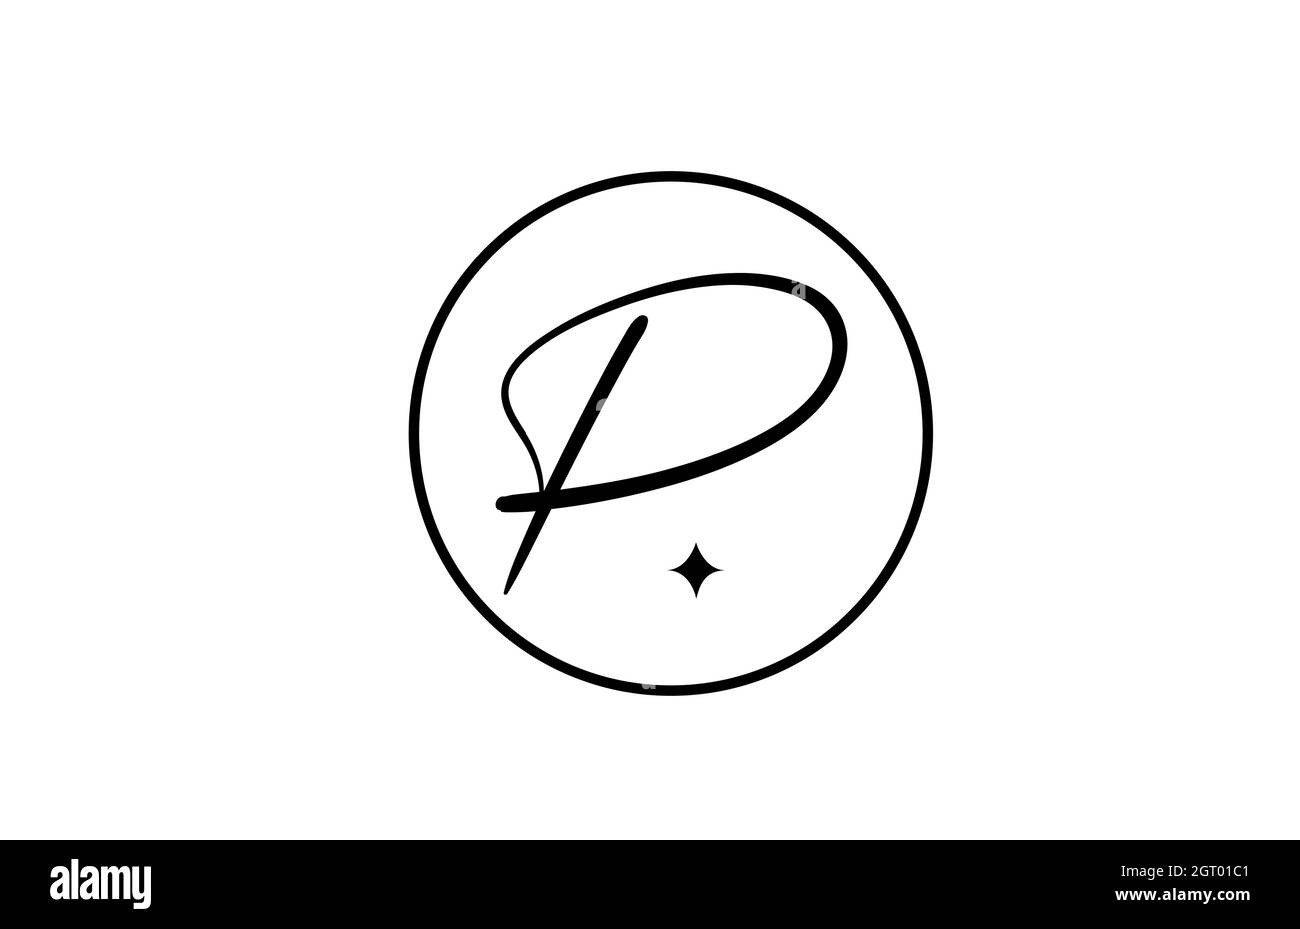 P logo lettera alfabetica per aziende con stella e cerchio. Lettere semplici ed eleganti per l'azienda. Logo di identità aziendale icona di branding in bianco e nero Illustrazione Vettoriale